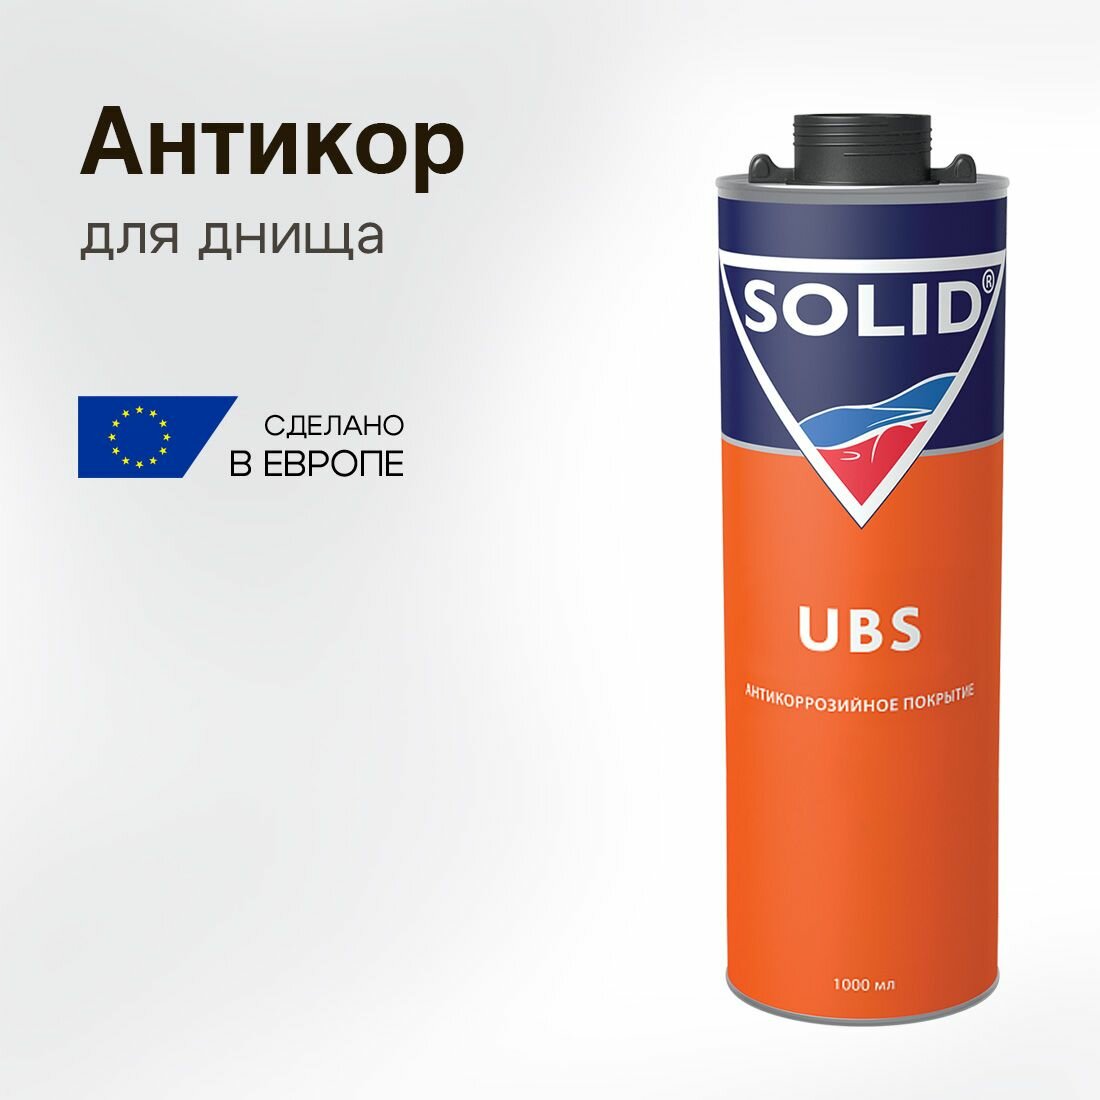 Антикор для авто Solid UBS для днища преобразователь ржавчины евробаллон 1000 мл